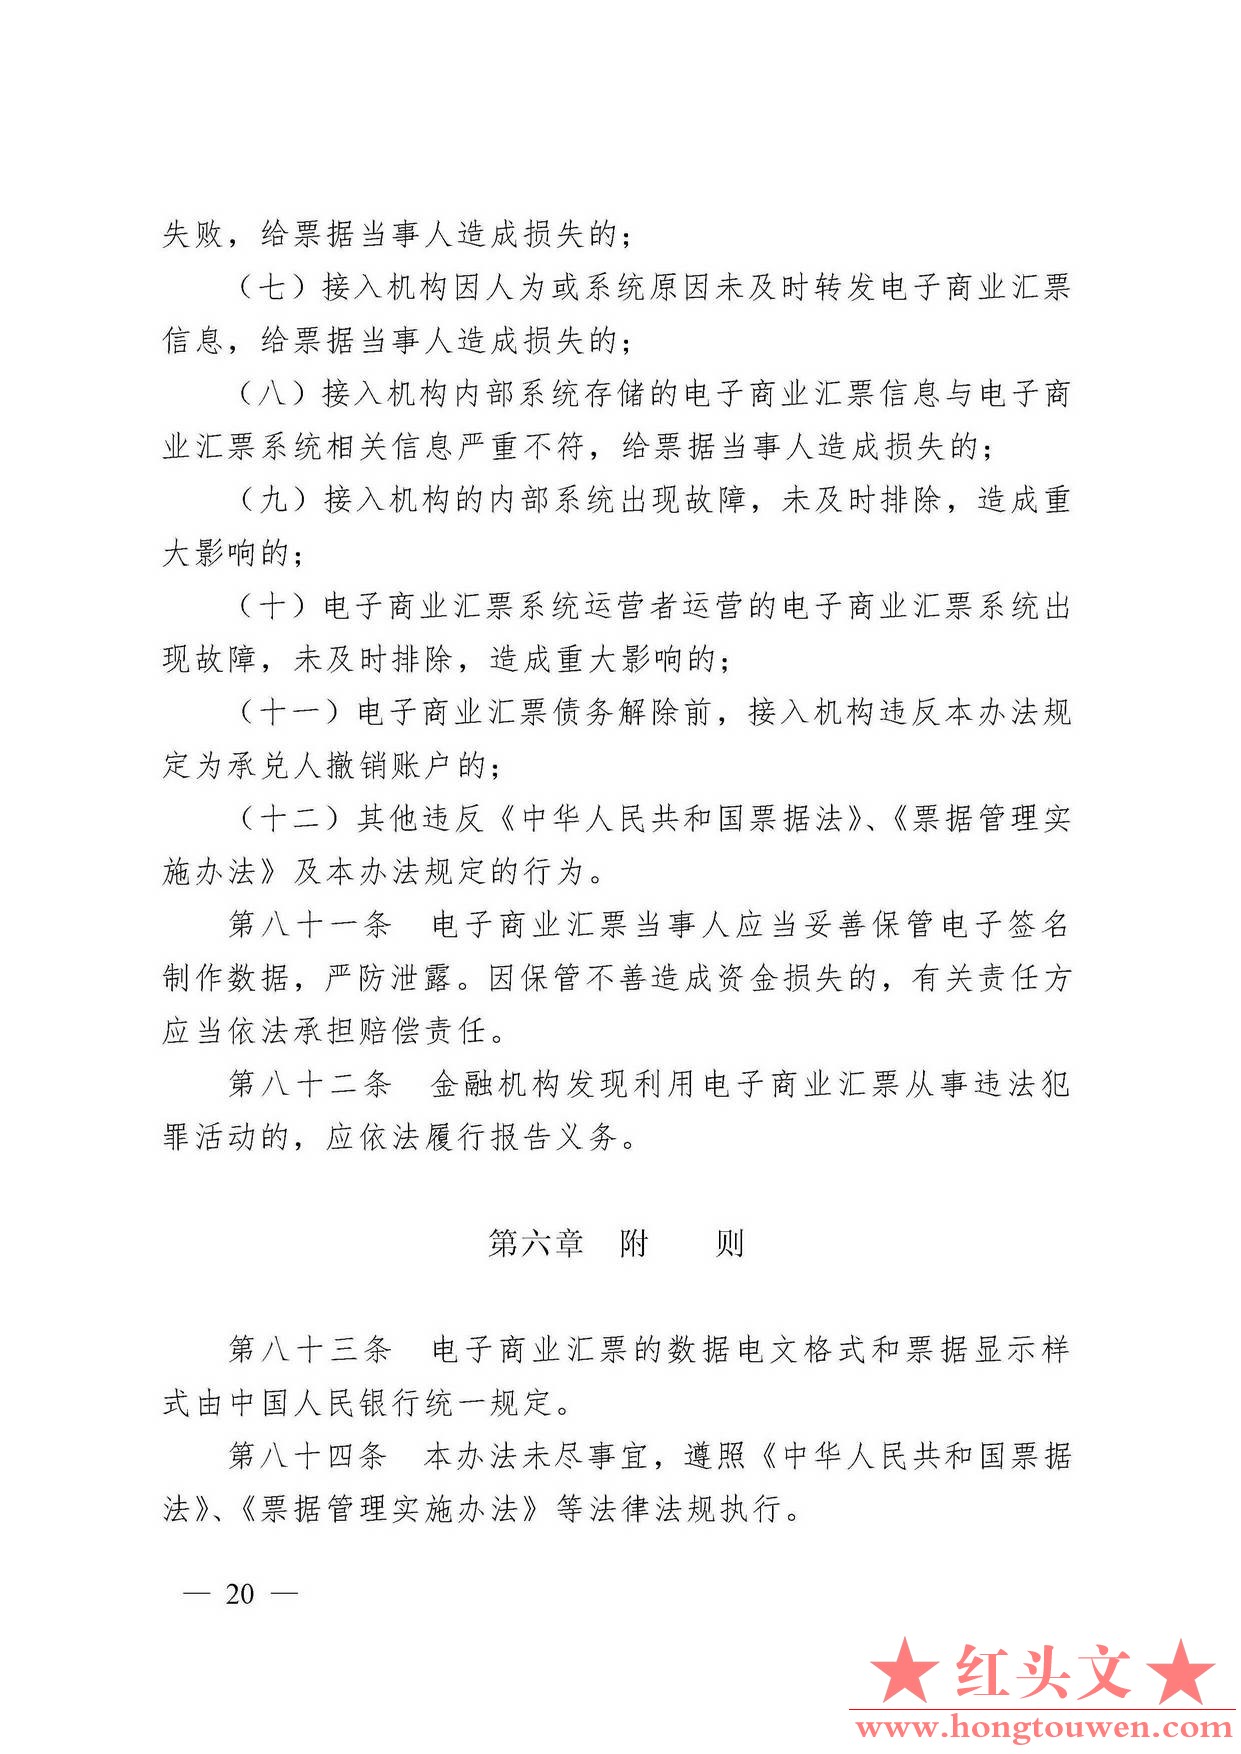 中国人民银行令[2009]2号-电子商业汇票管理办法_页面_20.jpg